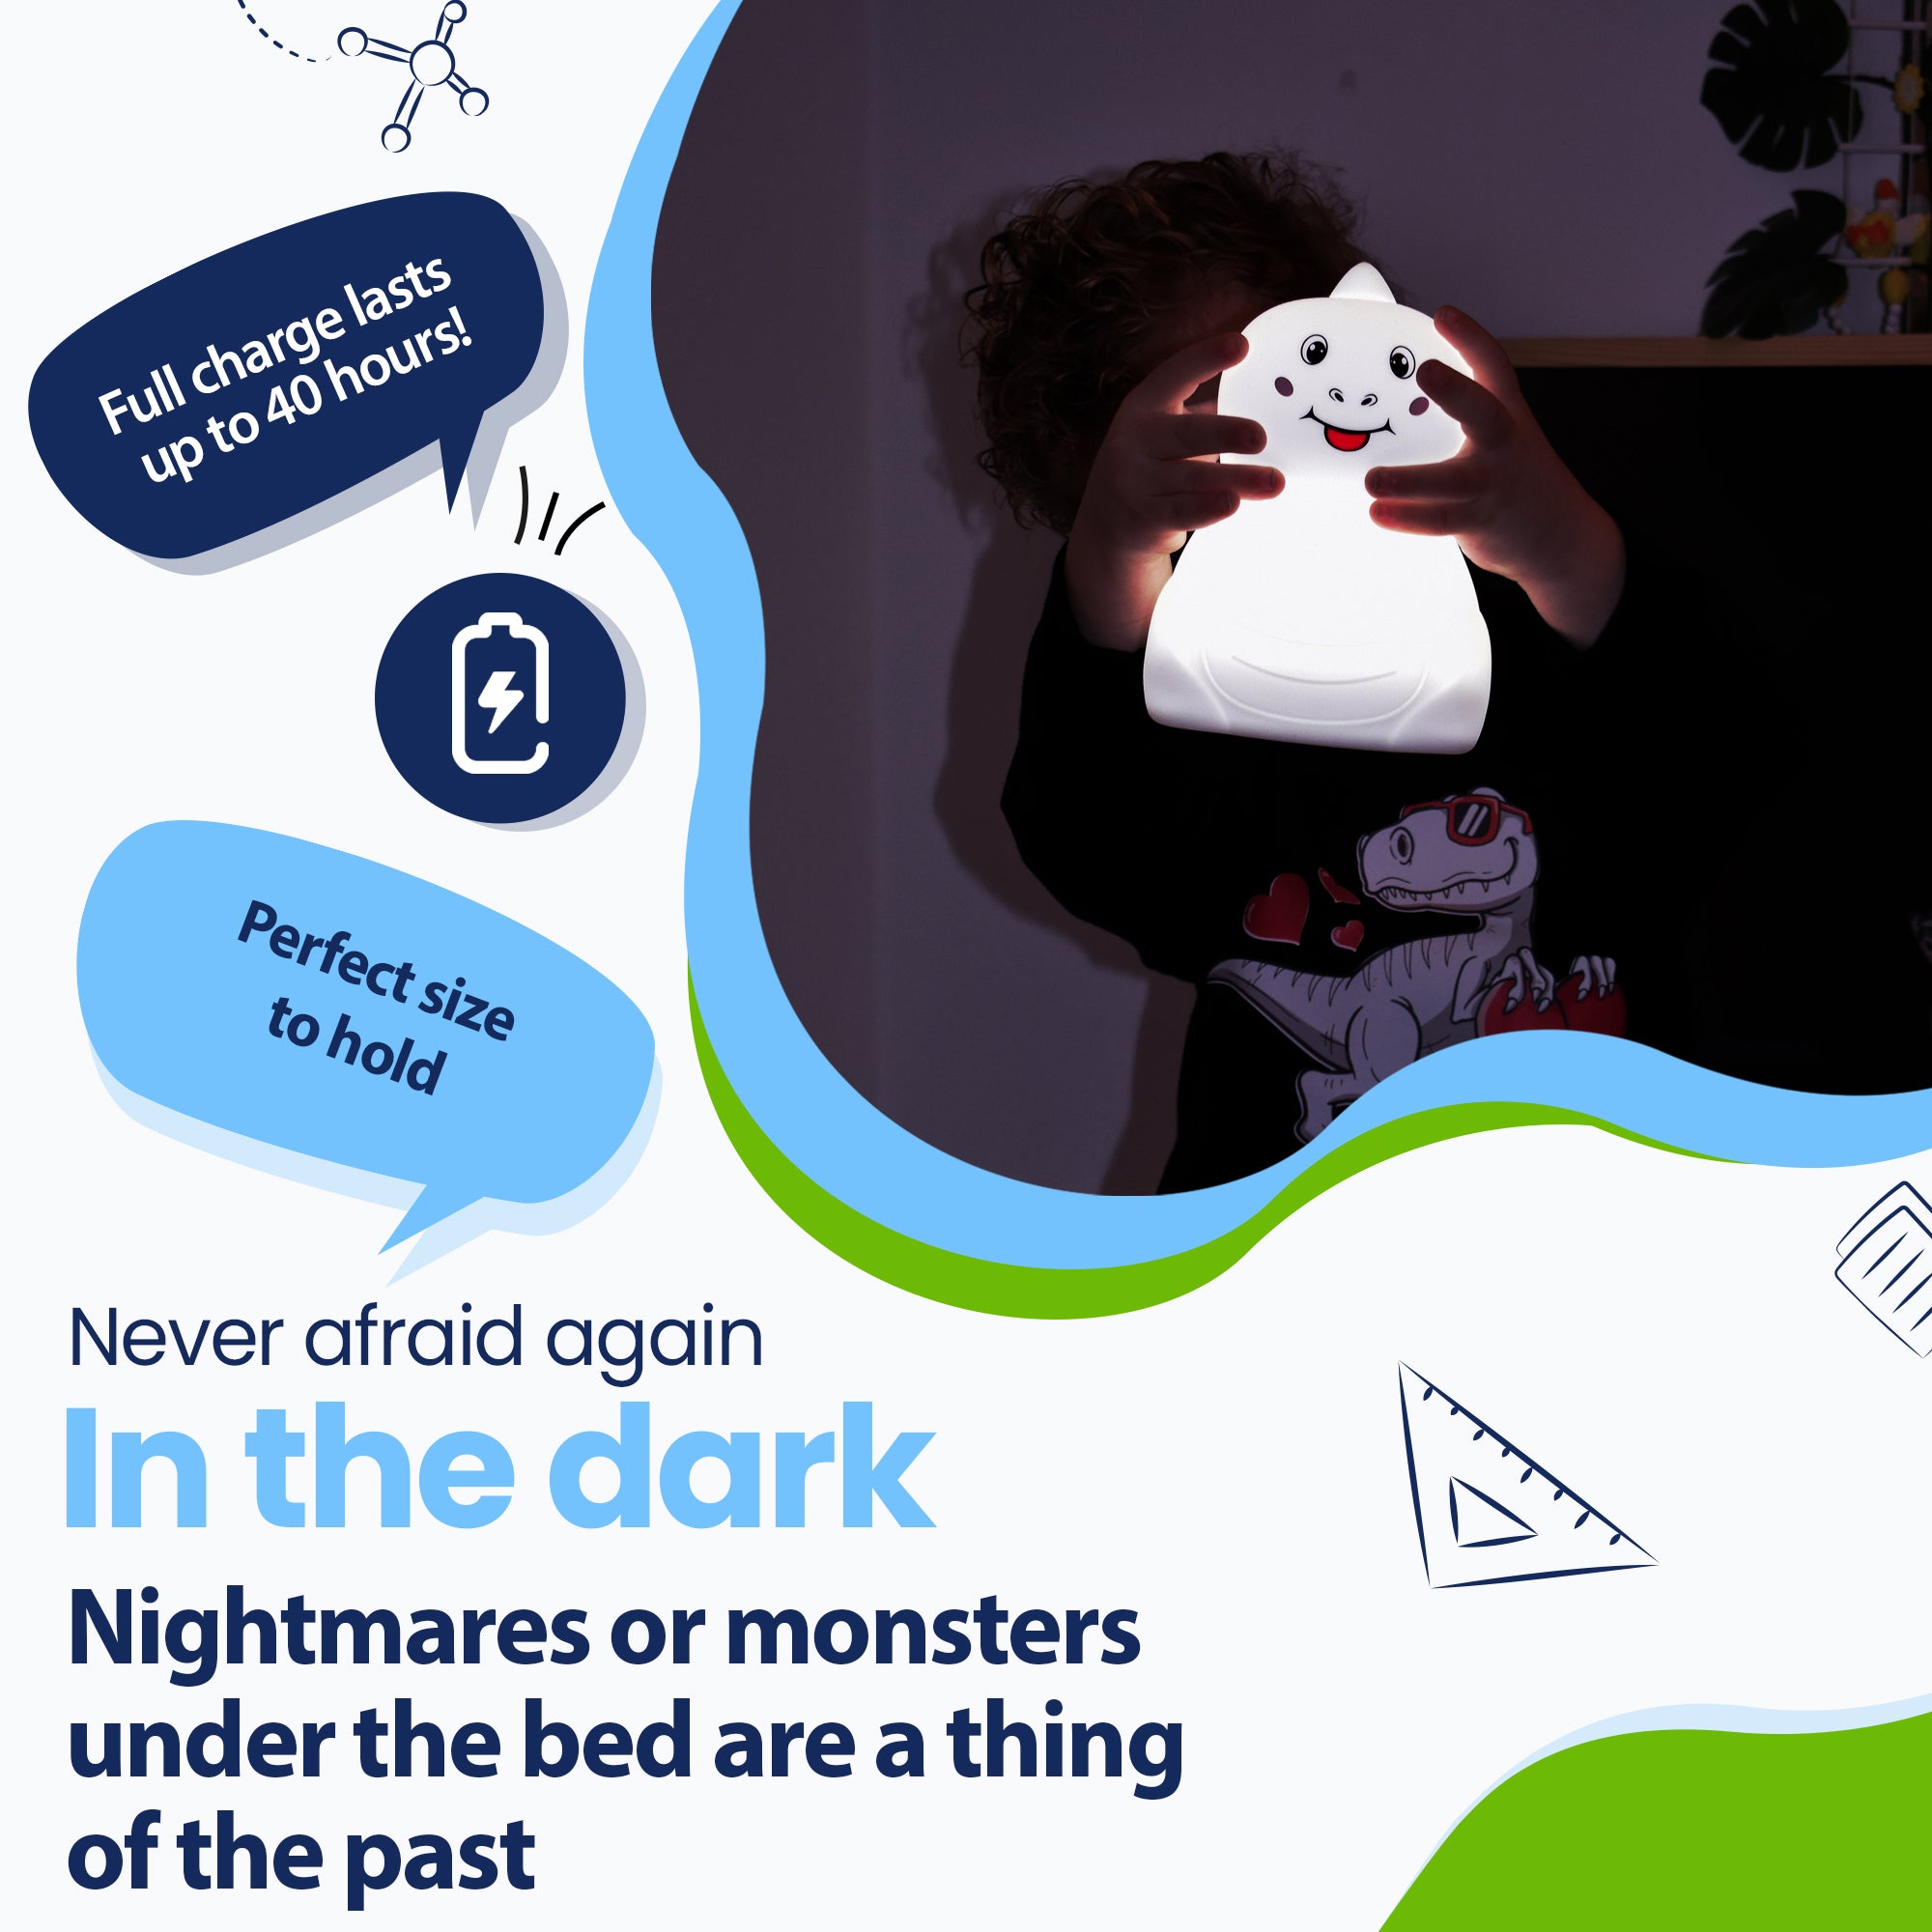 Nunca mais tenha medo do escuro - Pesadelos ou monstros debaixo da cama são coisas do passado - Dura até 40 horas - Tamanho perfeito para segurar